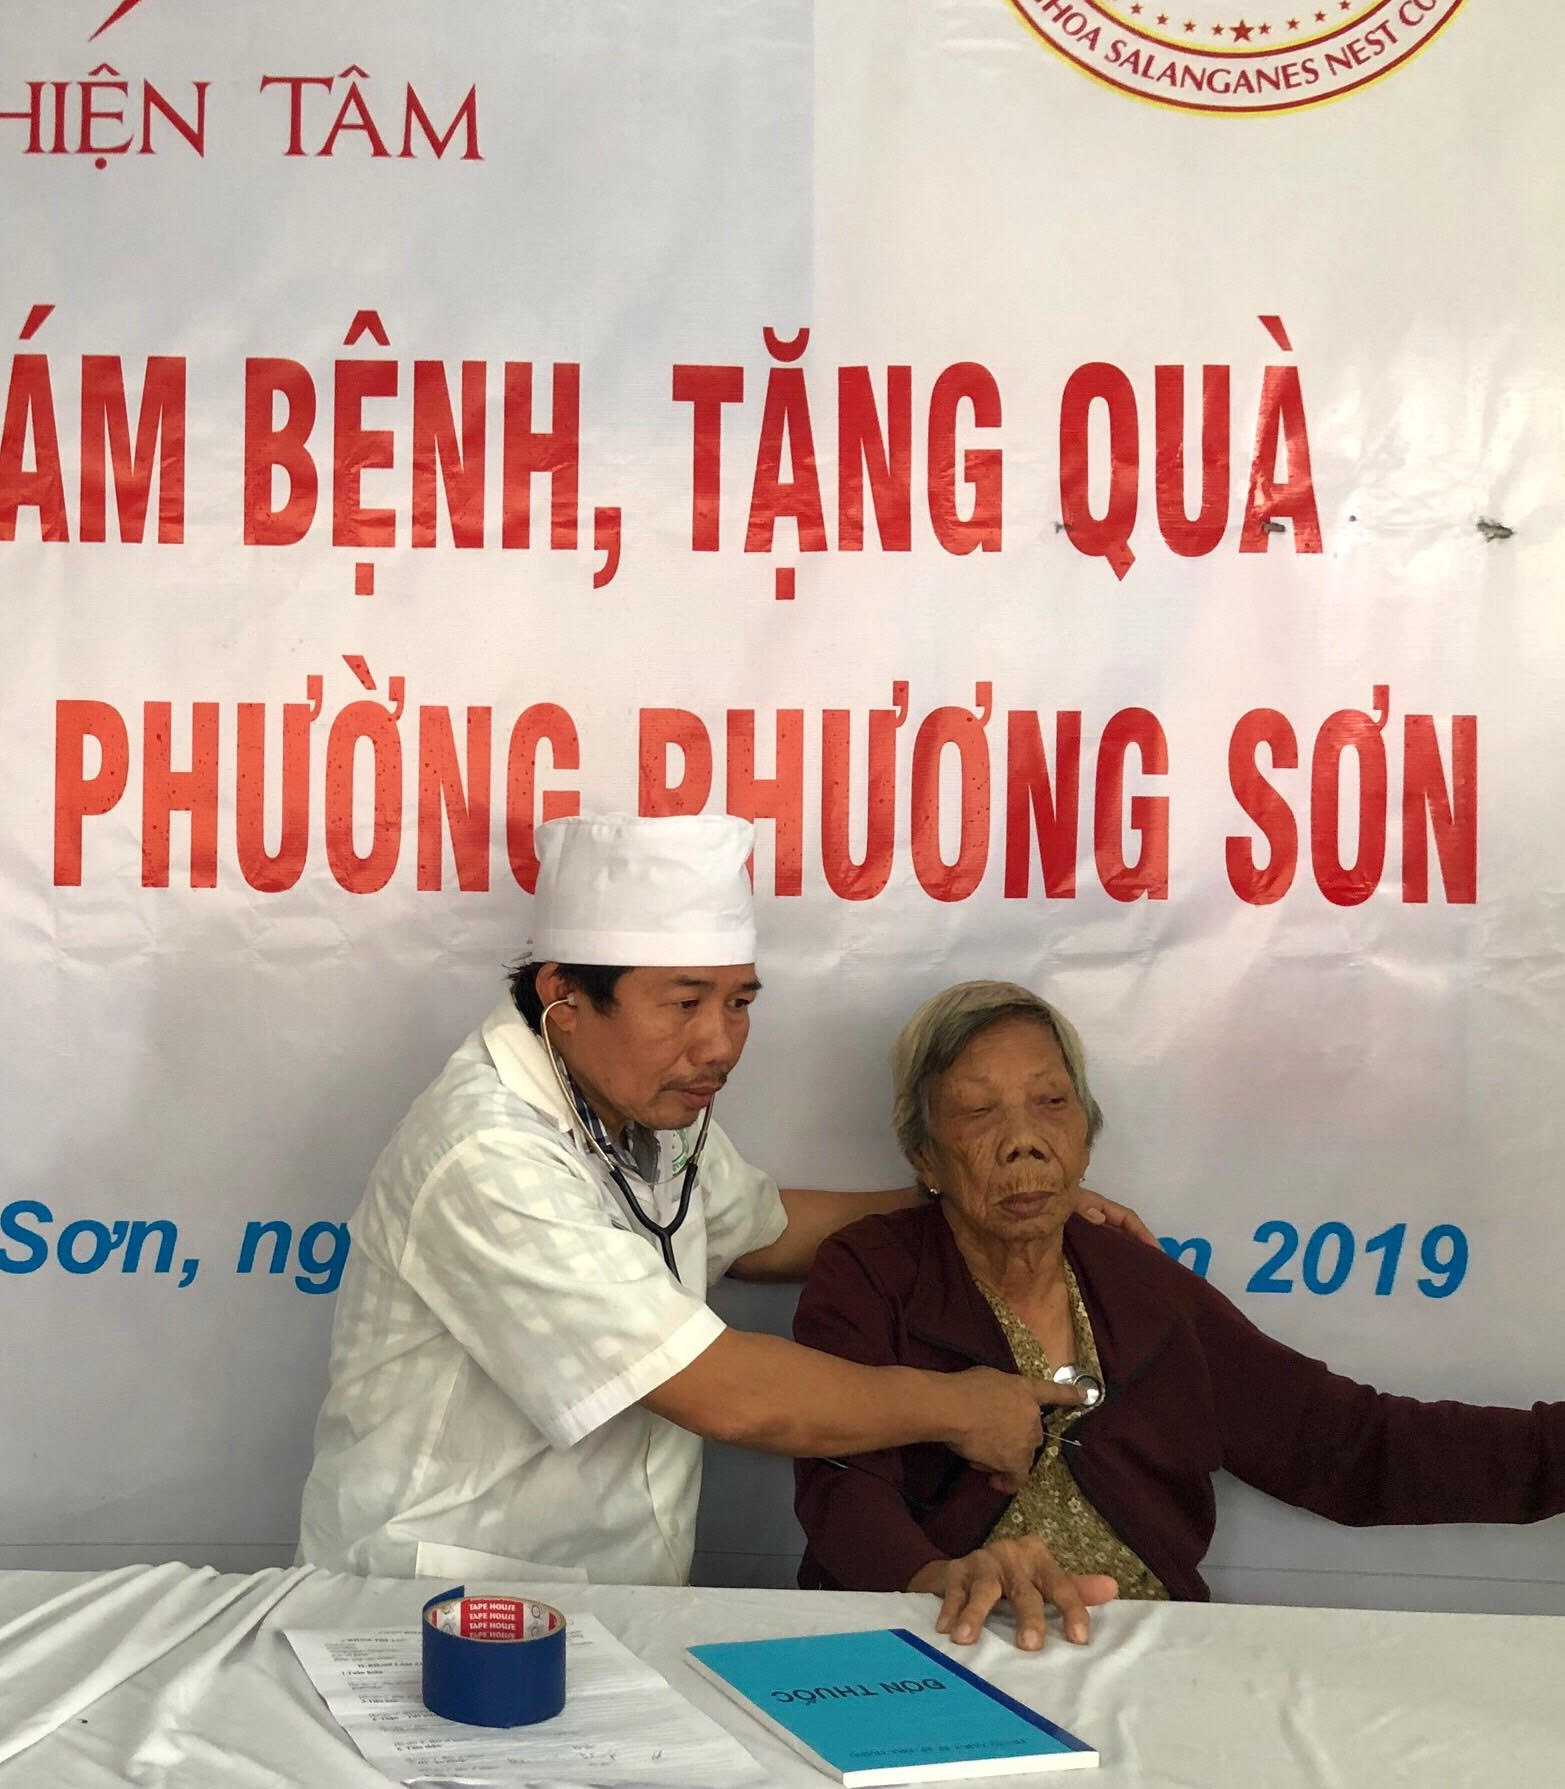 Y, bác sĩ của Hội Chữ thập đỏ TP.Nha Trang khám bệnh cho người cao tuổi phường Phương Sơn